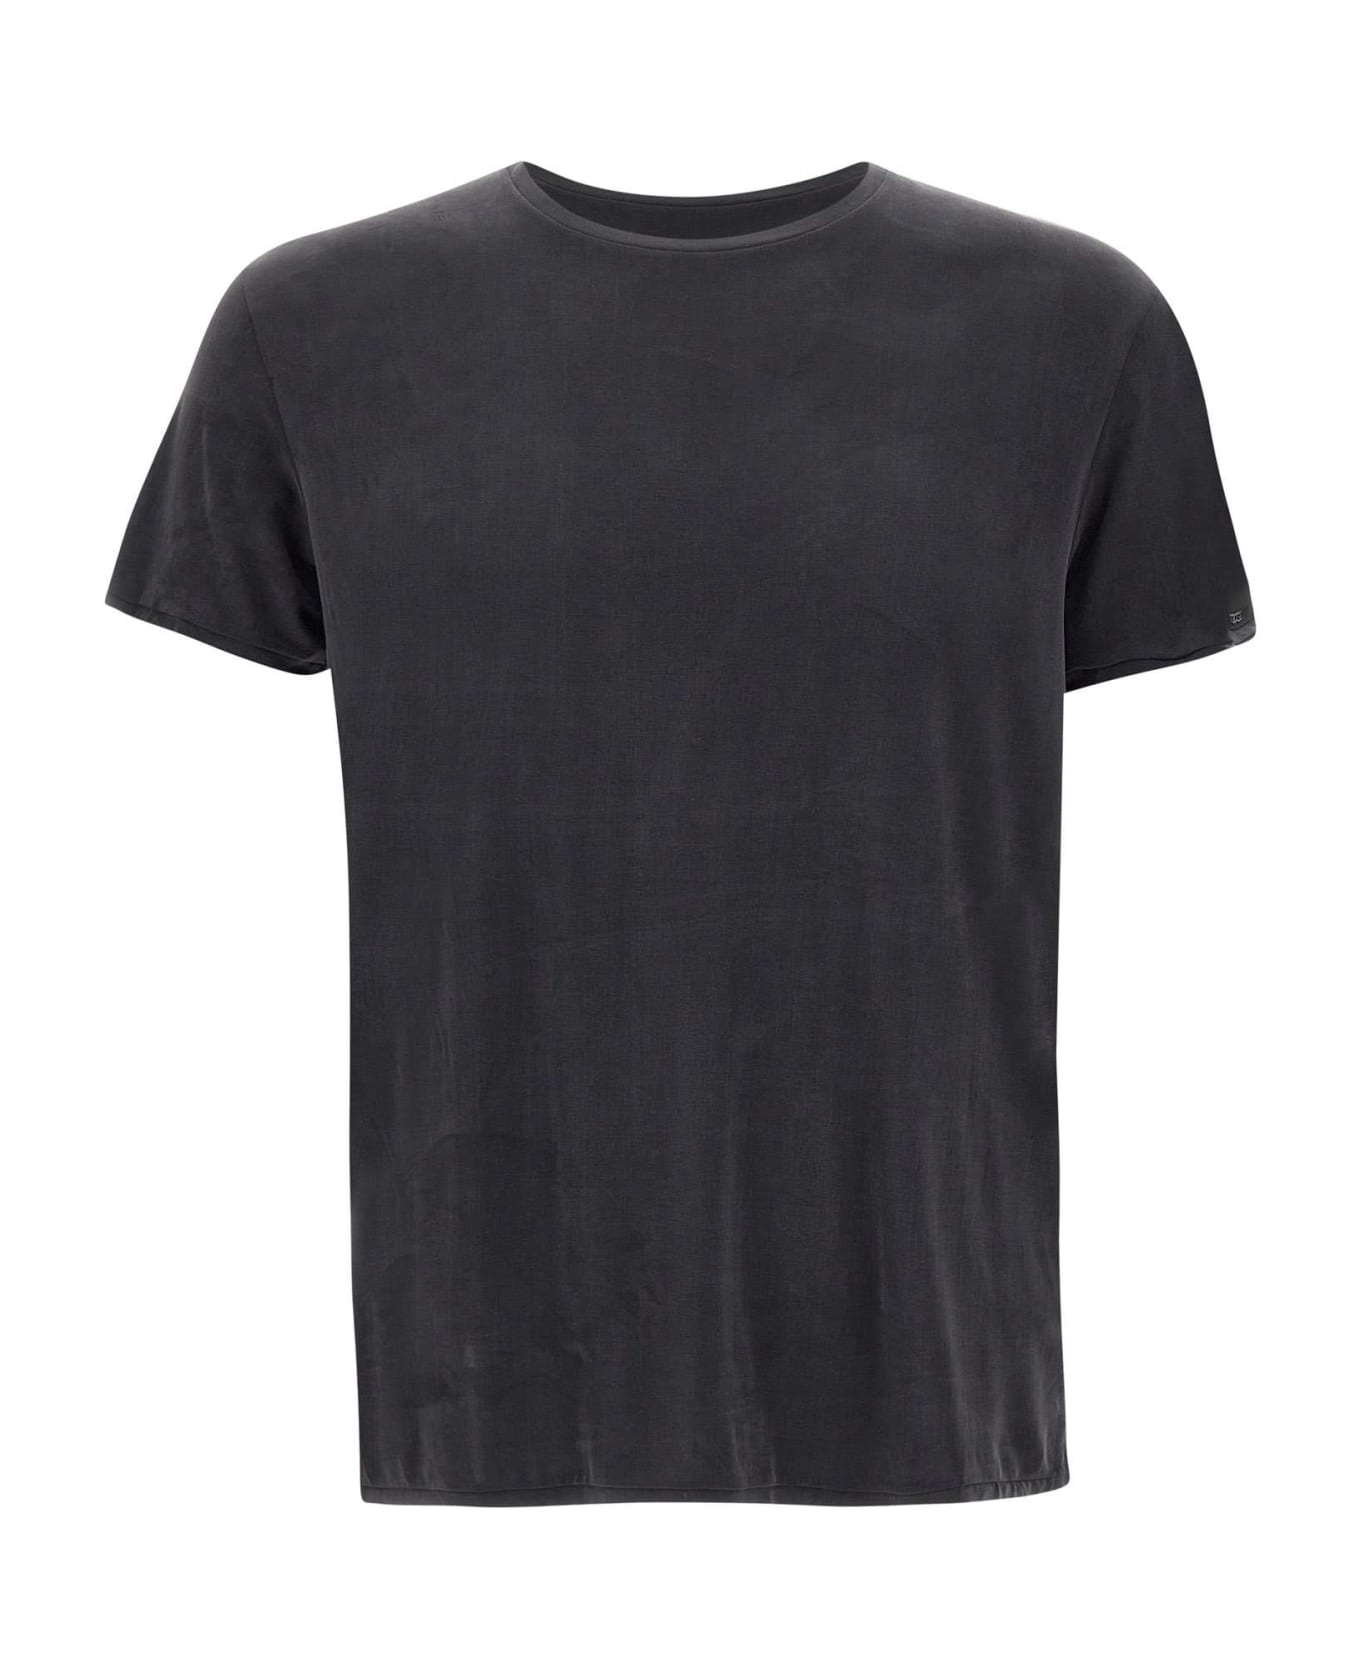 RRD - Roberto Ricci Design "cupro Shirty" T-shirt - BLACK